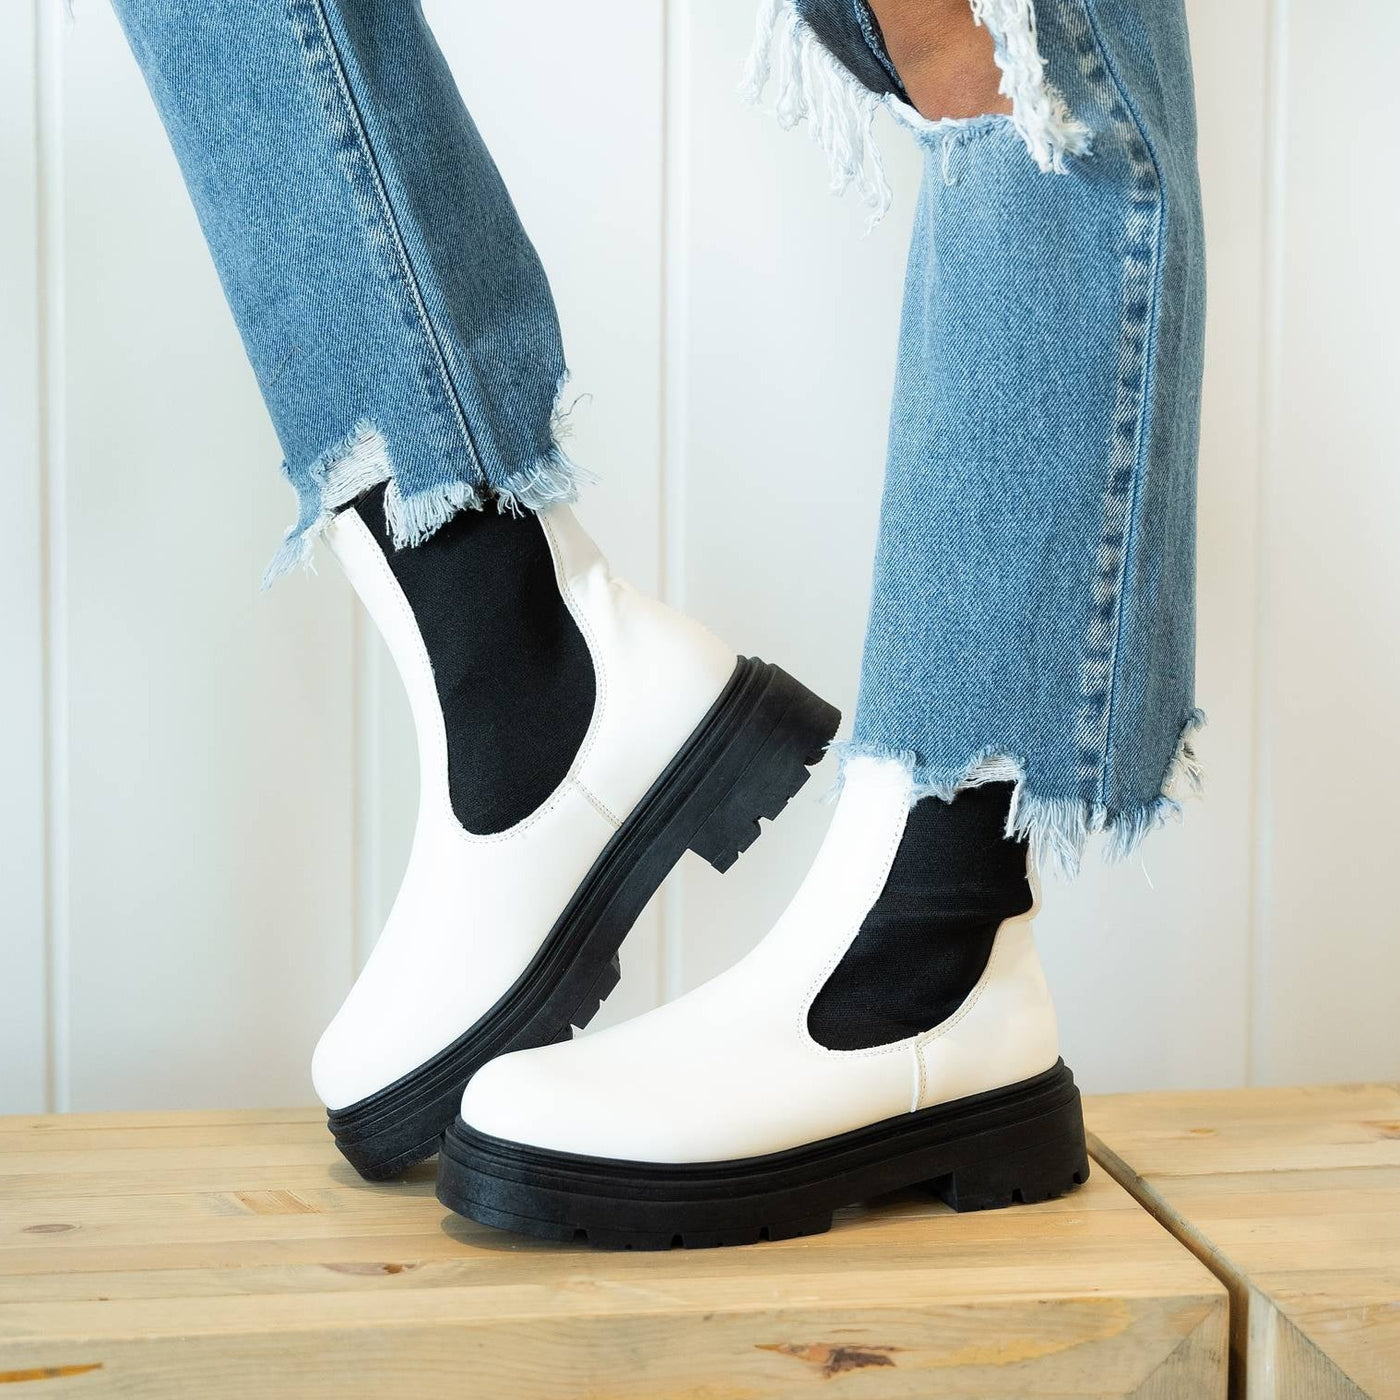 Rowen Platform Boots - White